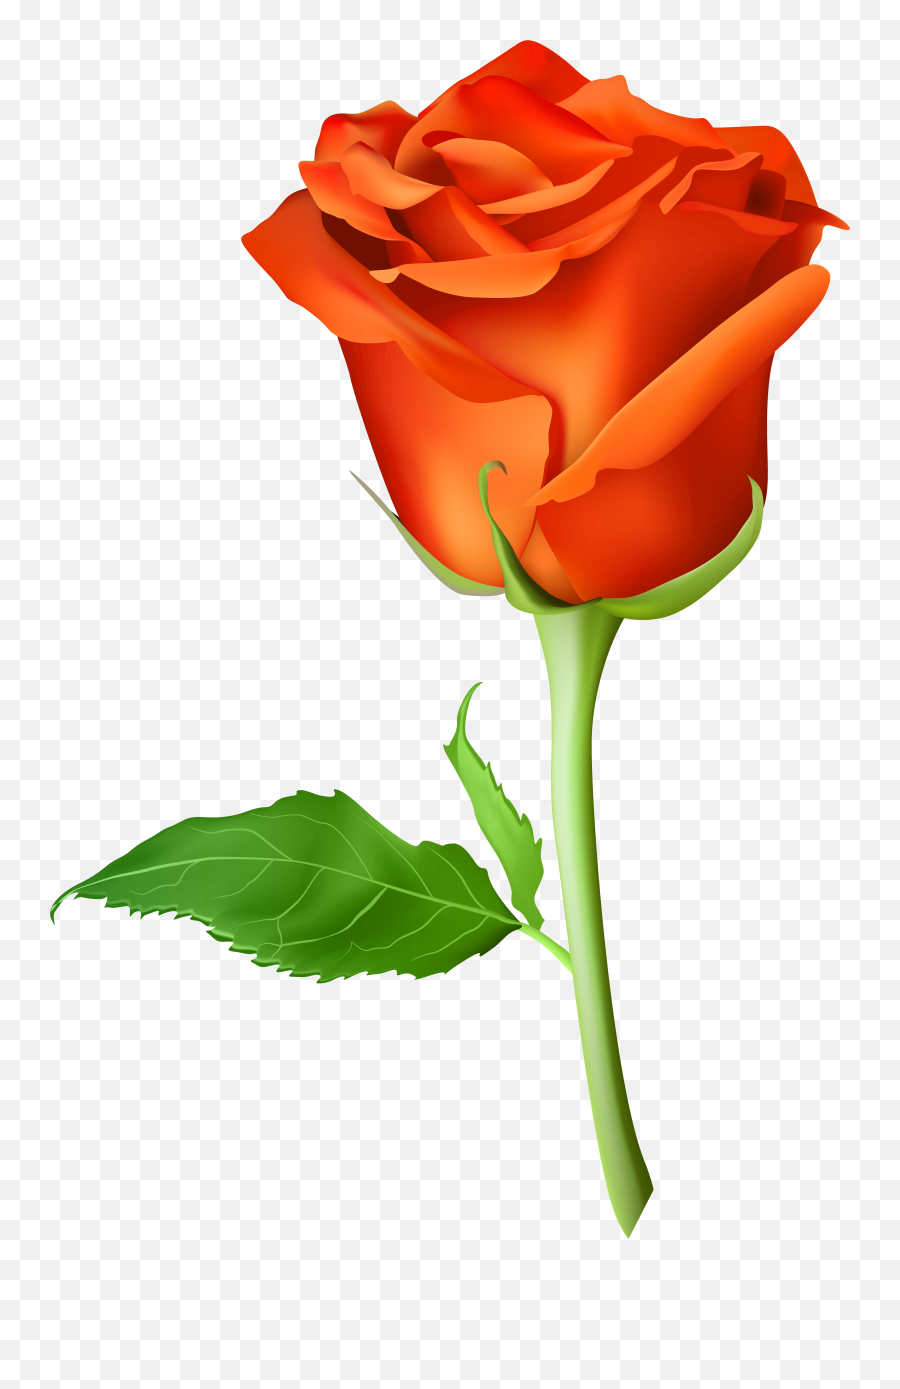 Rose Png Flower Images Free Download - Transparent Orange Rose Png,Flower Stem Png